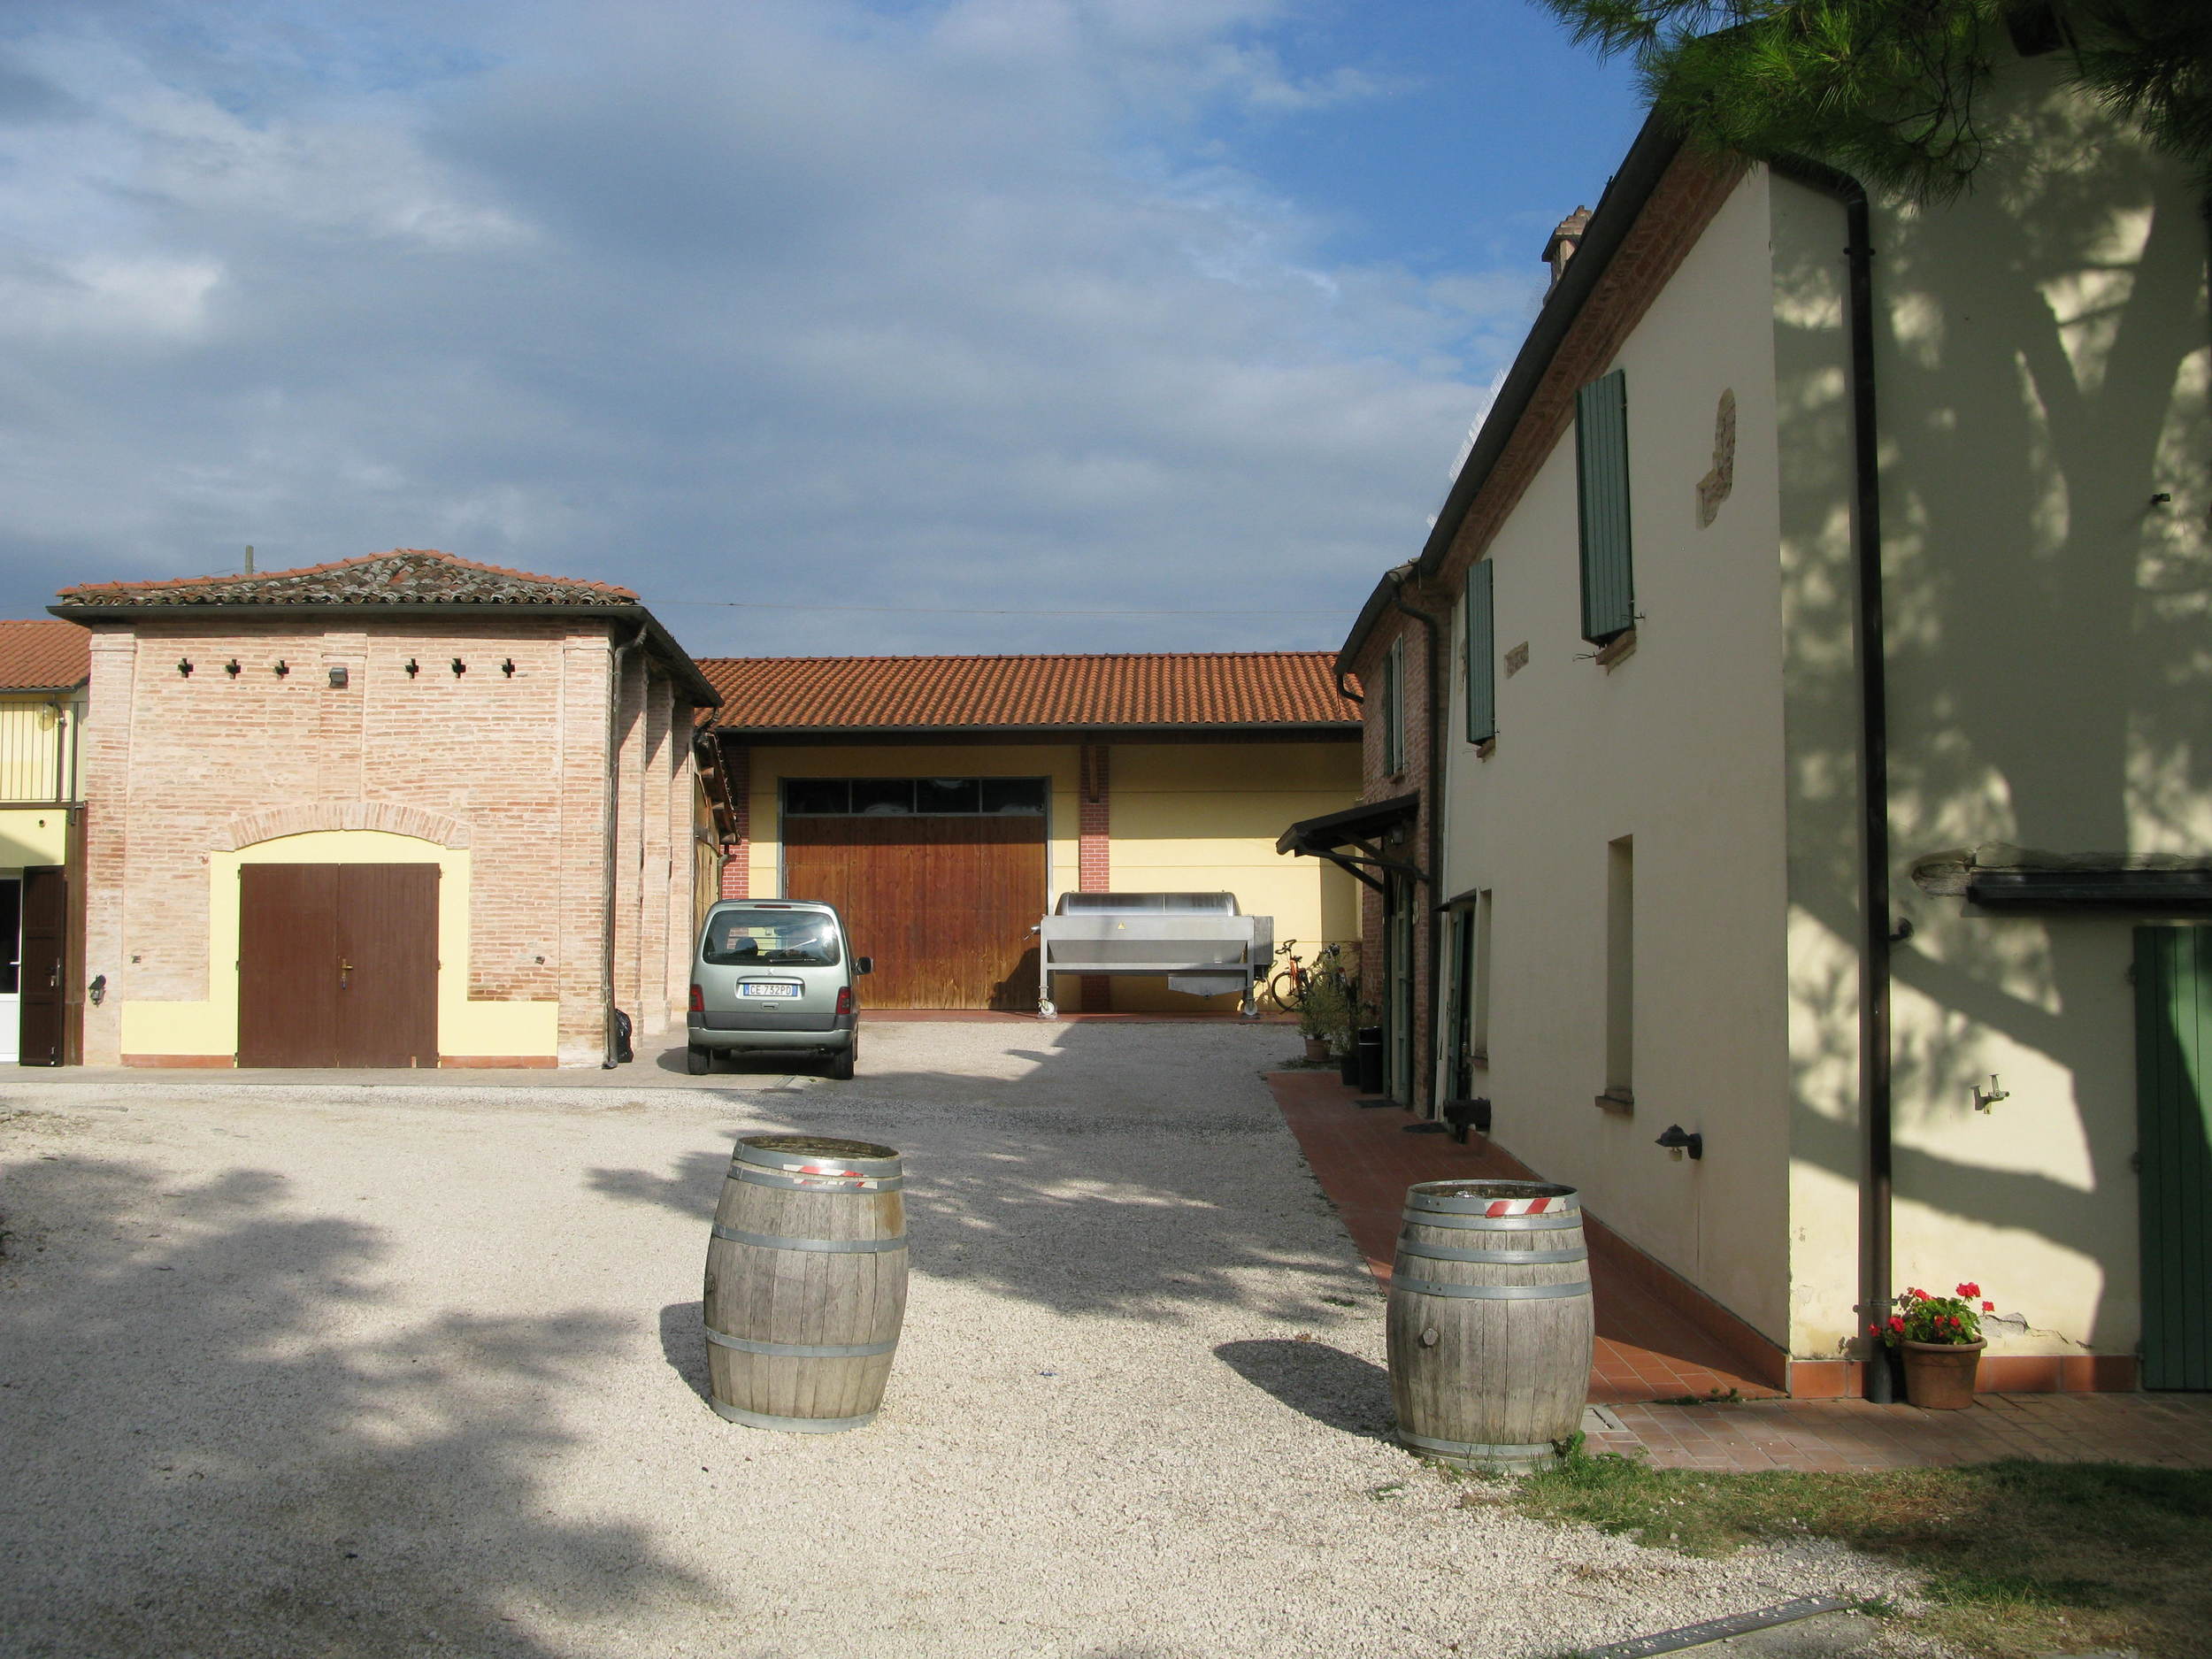 The winery at La Sabbiona